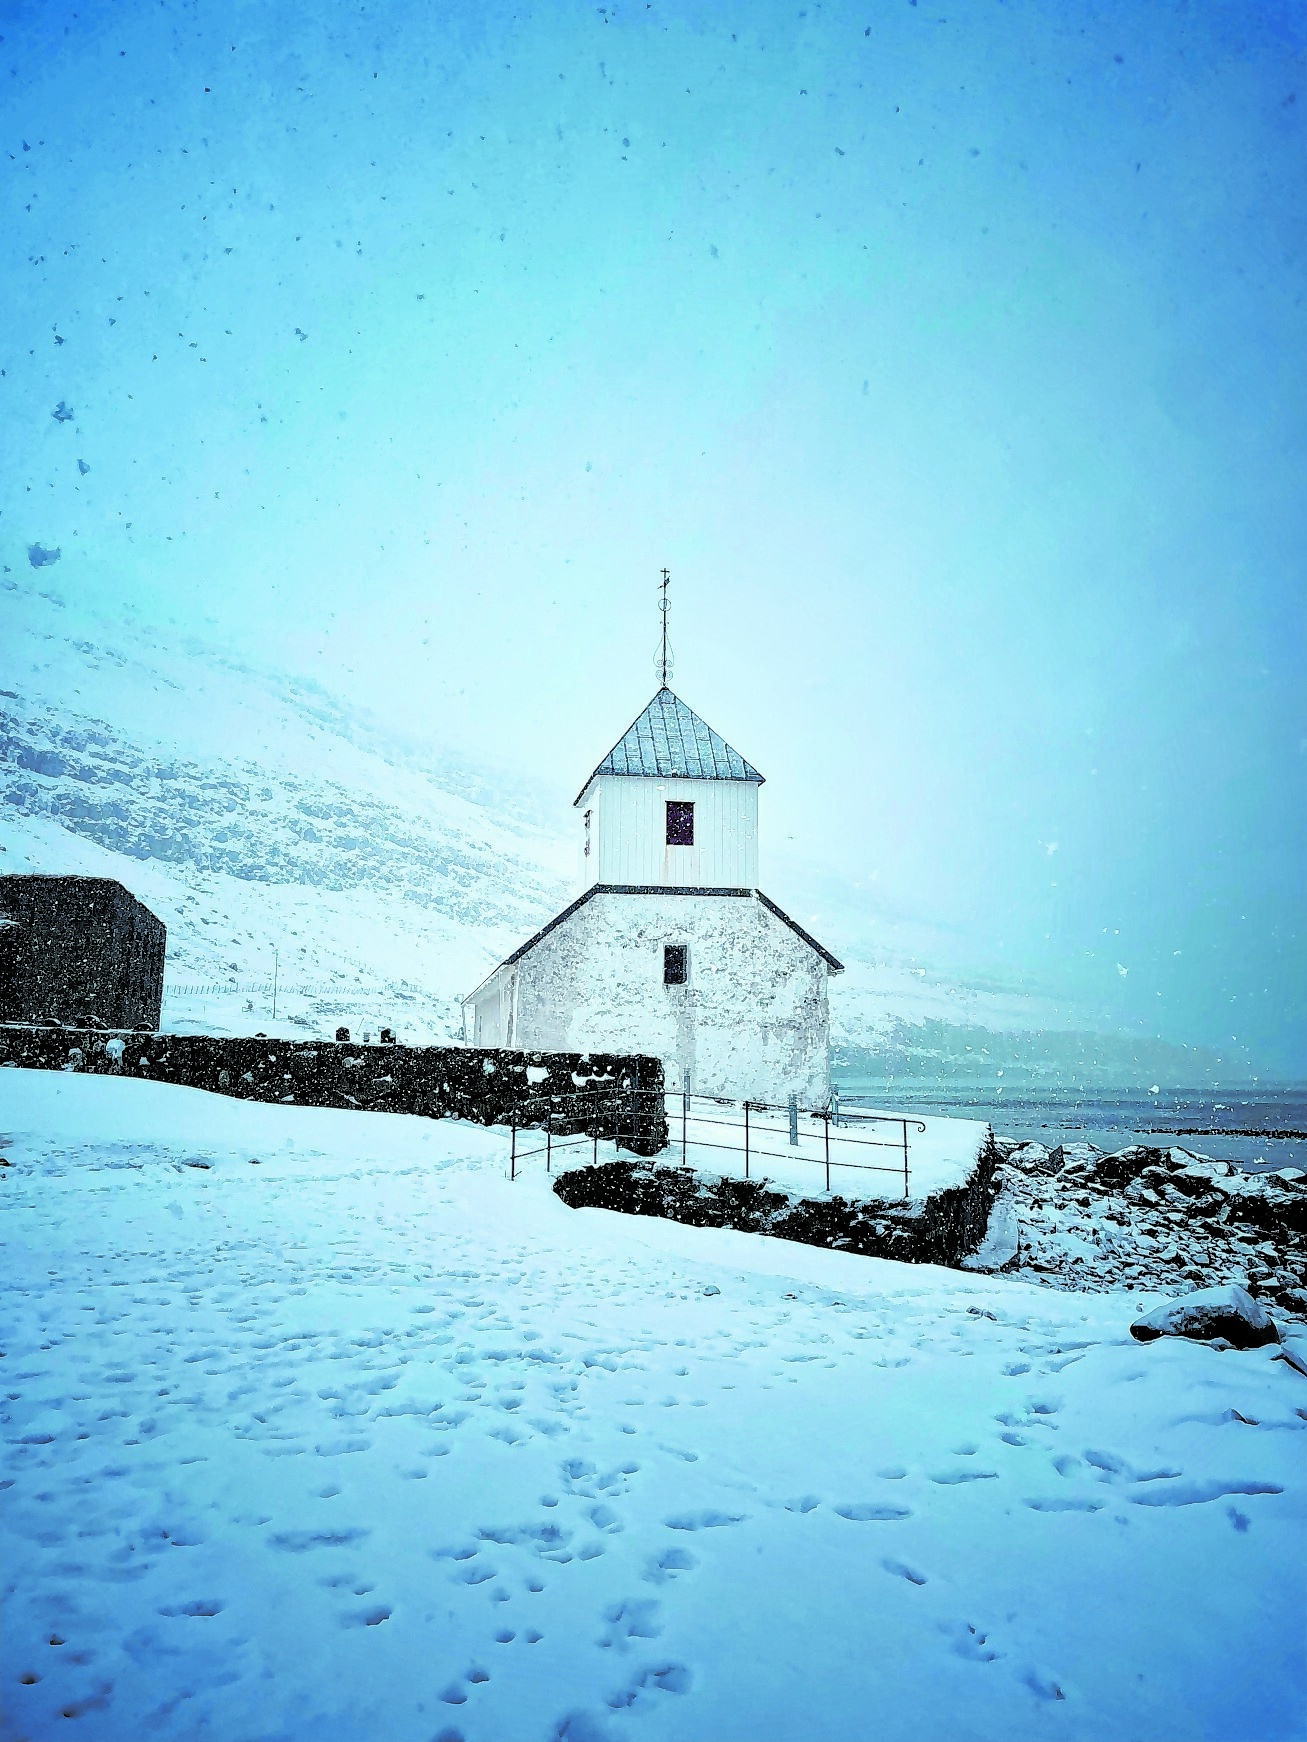 Die Kirchensiedlung Kirkjubøur im Schneetreiben – für Stefan Kruecken bleibt dieser „Moment der Magie“ unvergesslich.